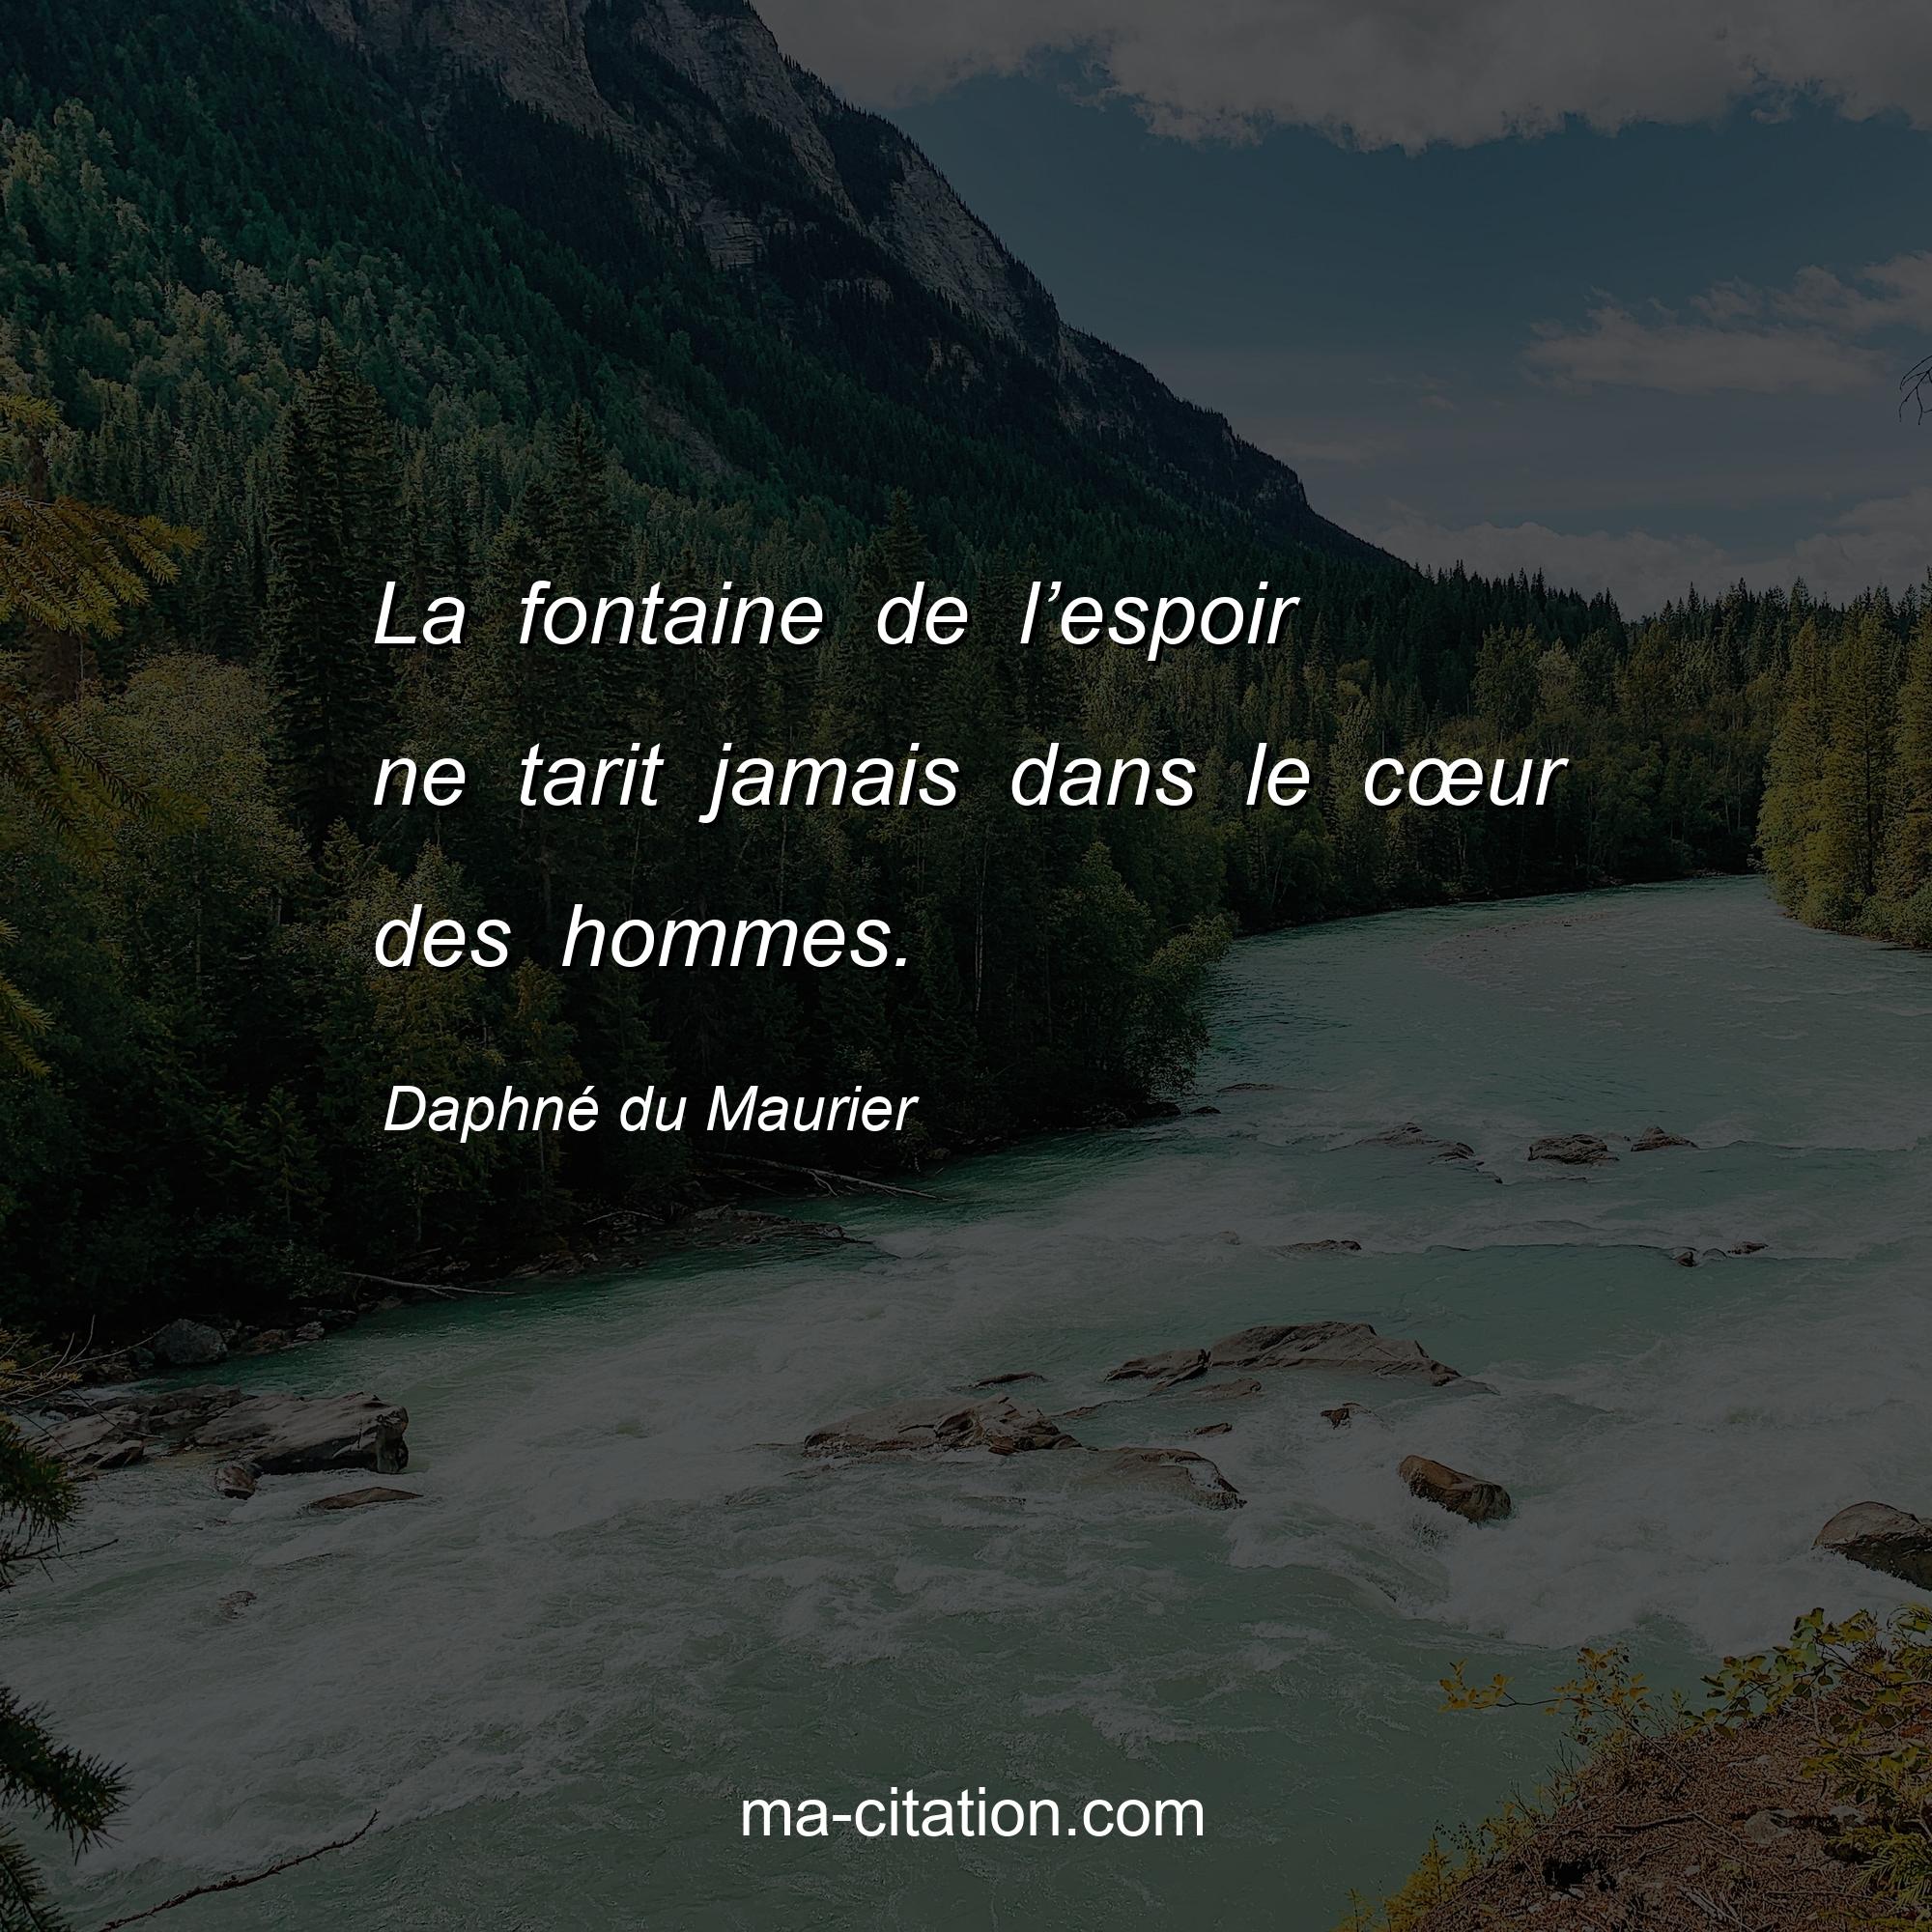 Daphné du Maurier : La fontaine de l’espoir ne tarit jamais dans le cœur des hommes.